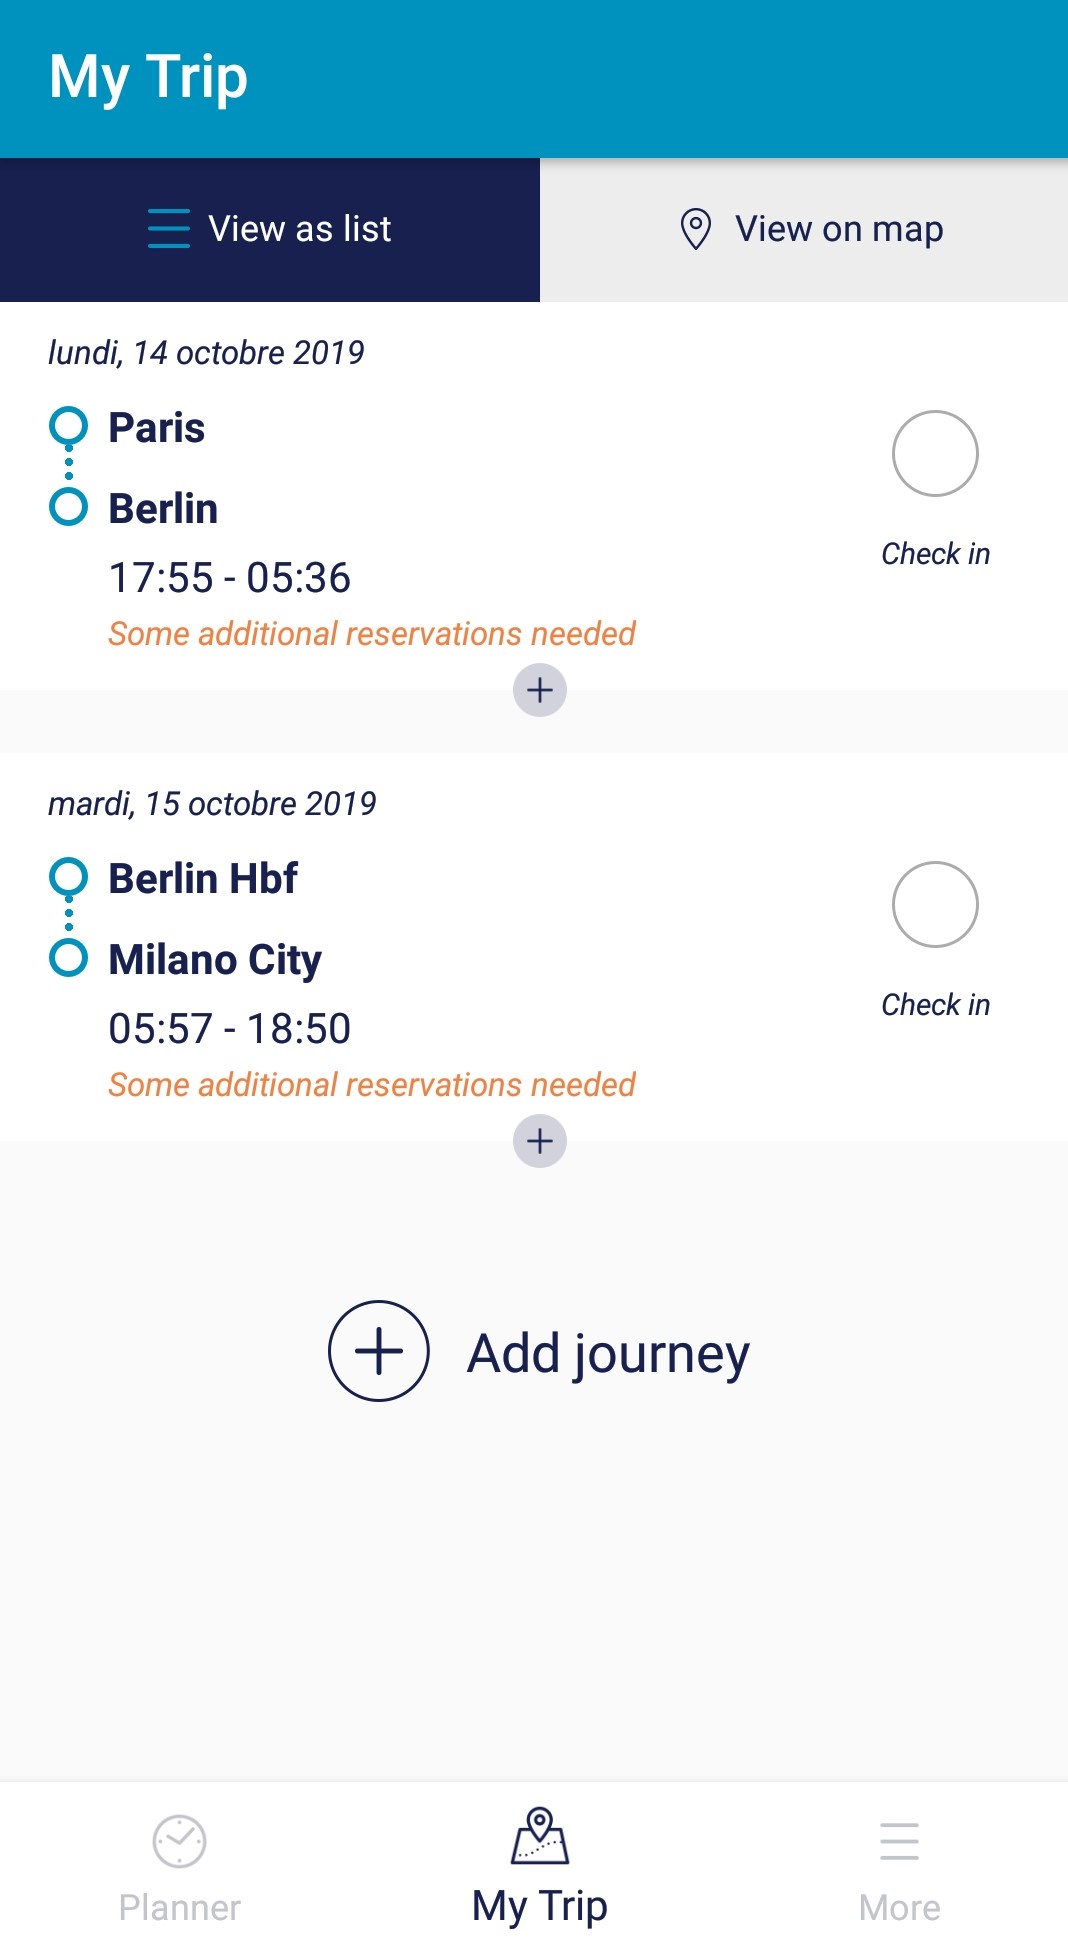 rail journey planner app